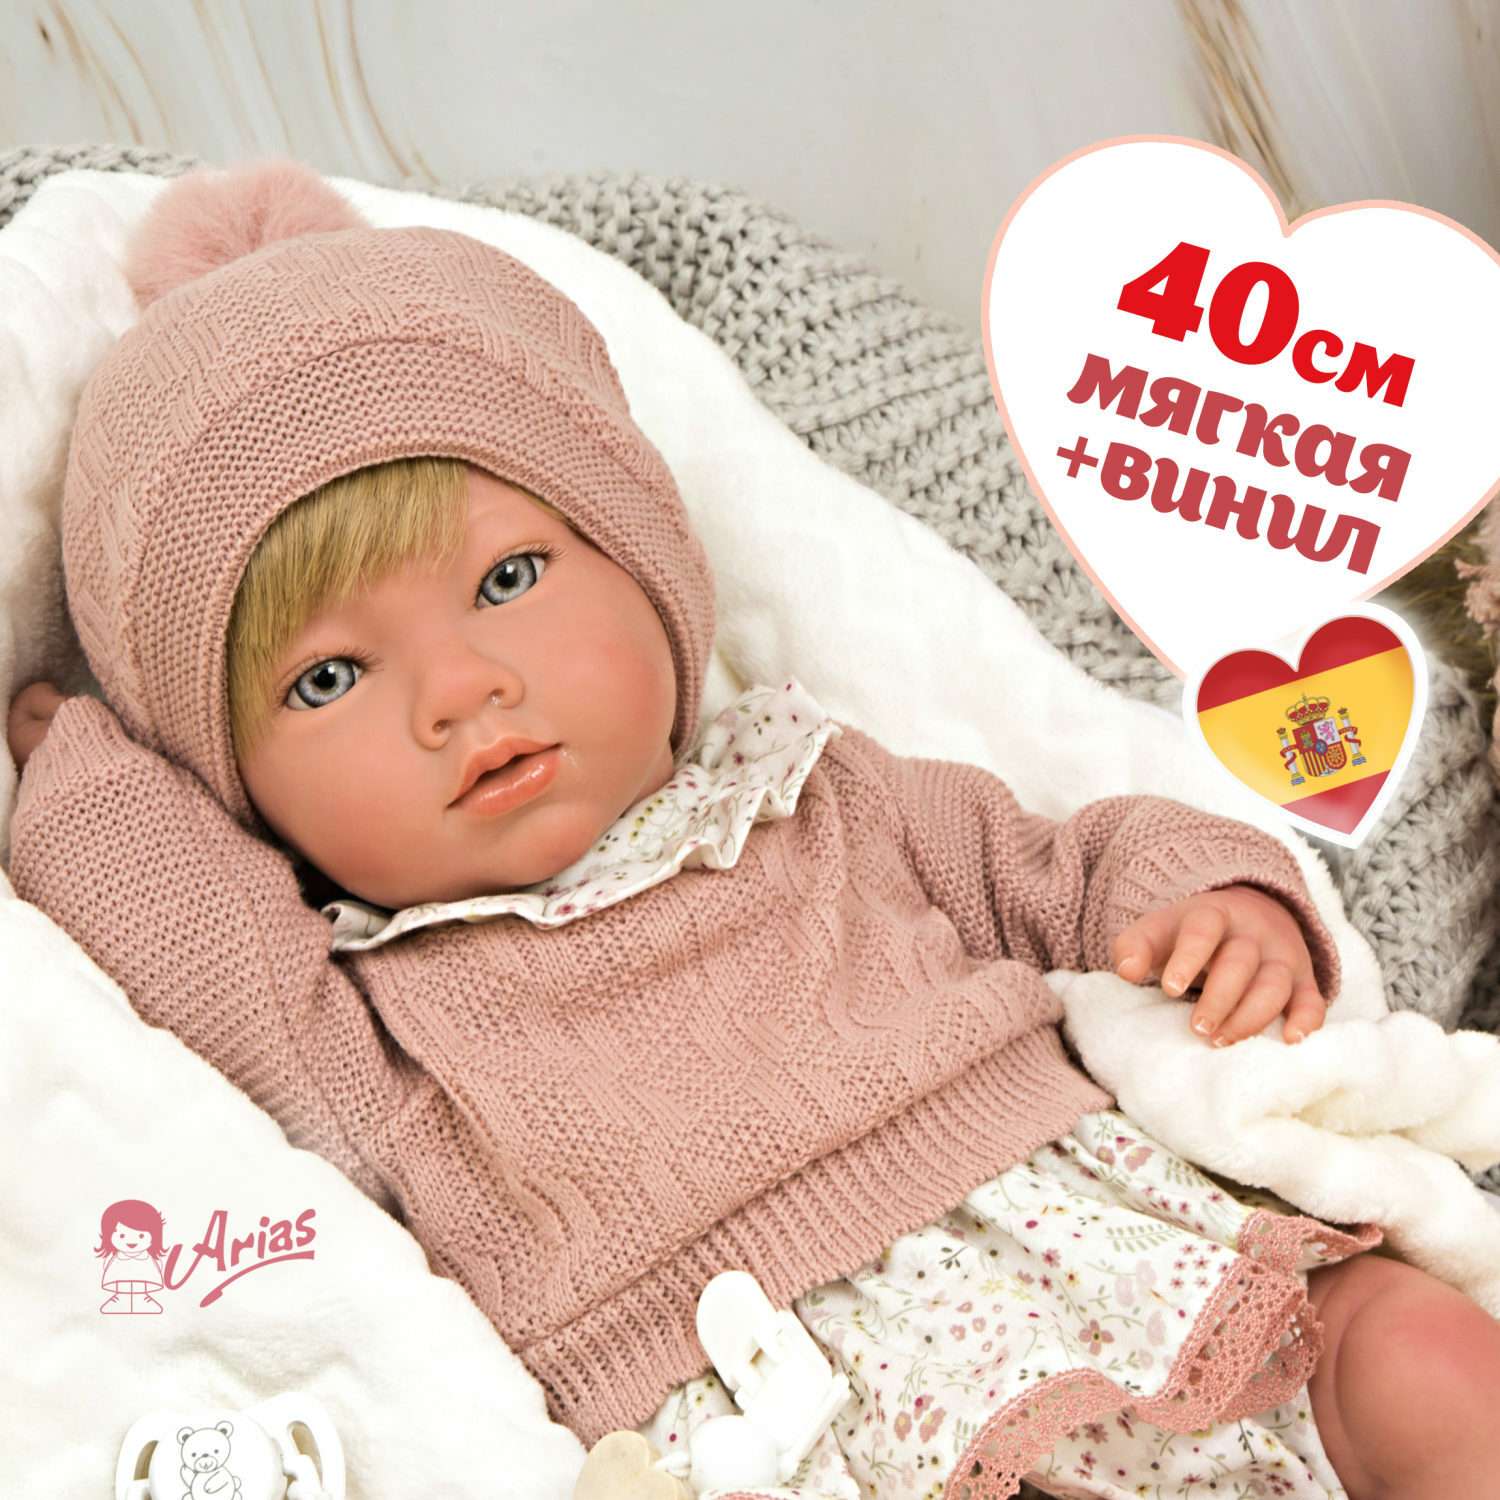 Кукла пупс Arias Abril новорожденный мягкий с соской с одеялом 40 см реборн Т24486 - фото 1